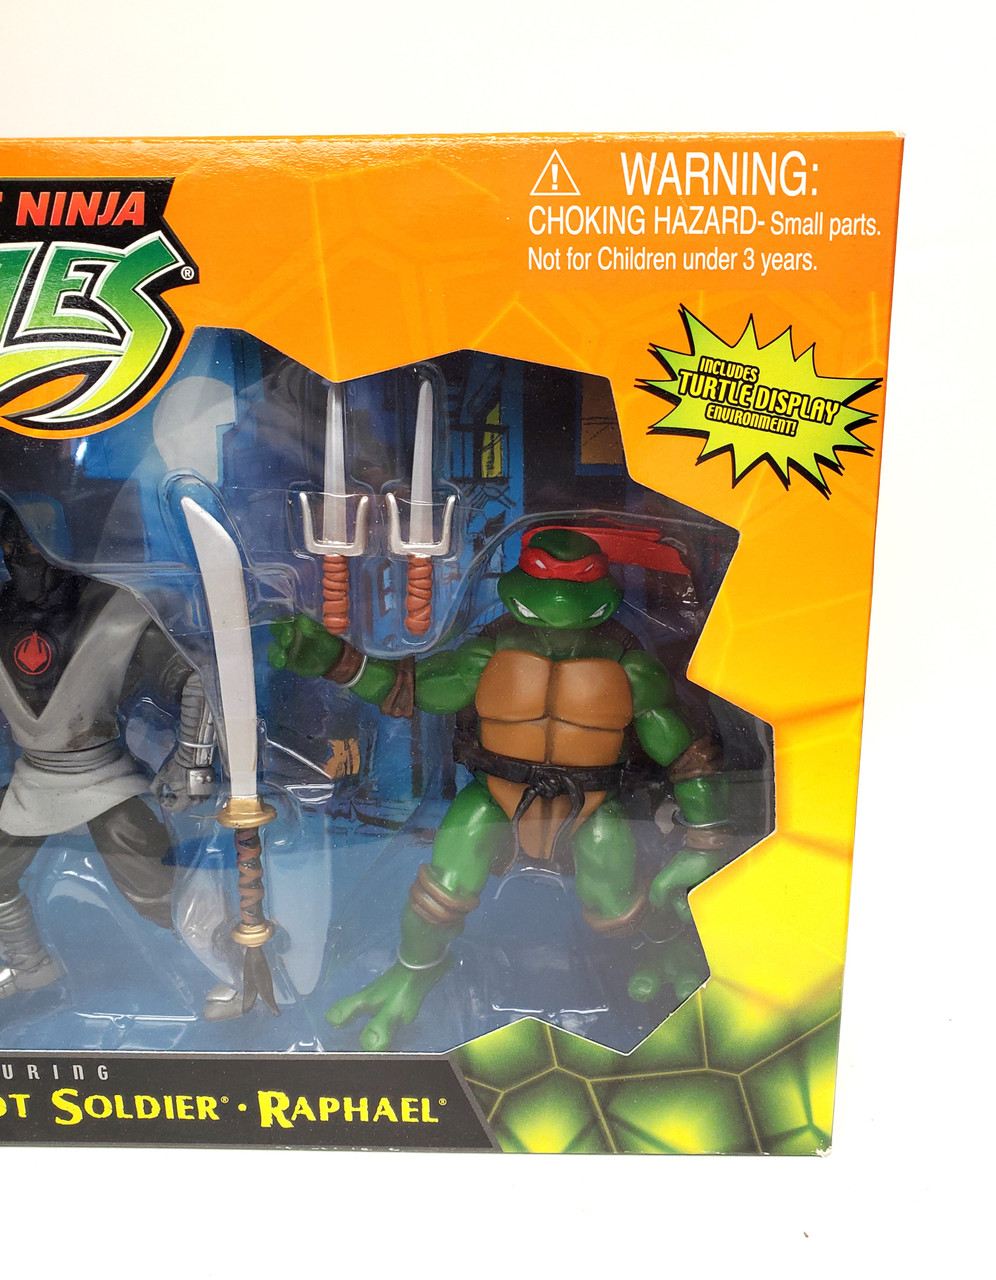 Lot of (9) TMNT Teenage Mutant Ninja Turtles Action Figures 2012 2002  Playmates